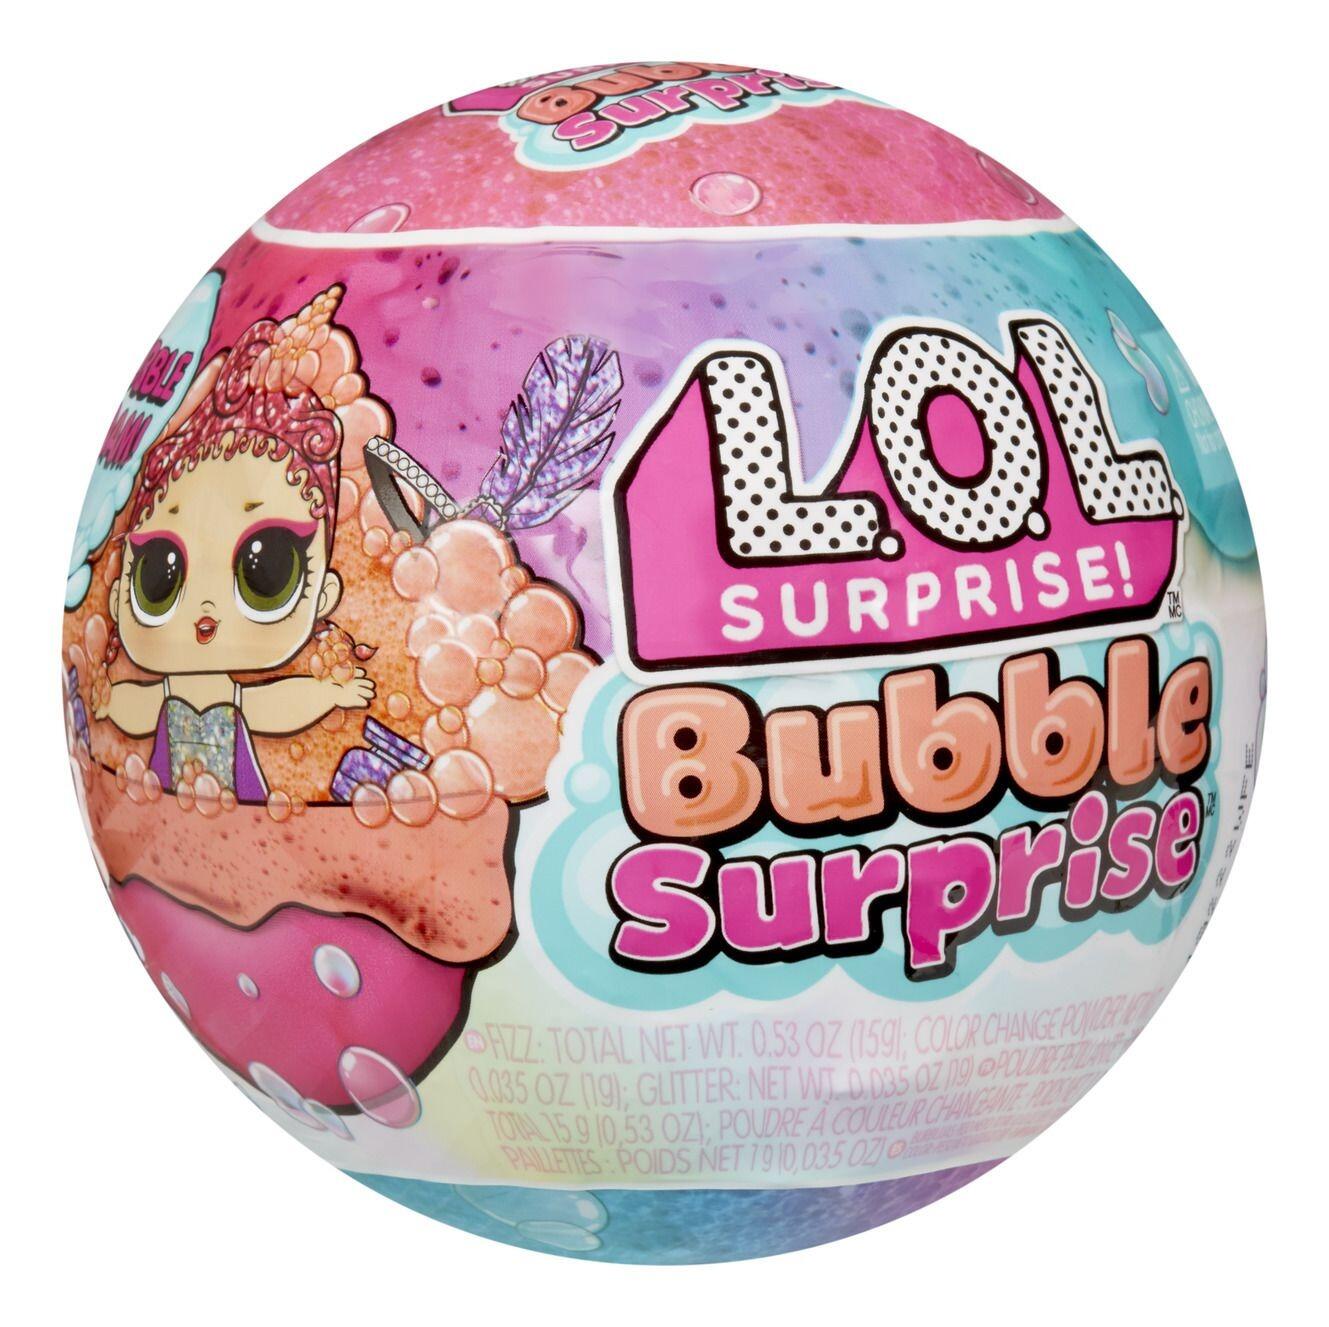 L.O.L Surprise Bubble Surprise Doll